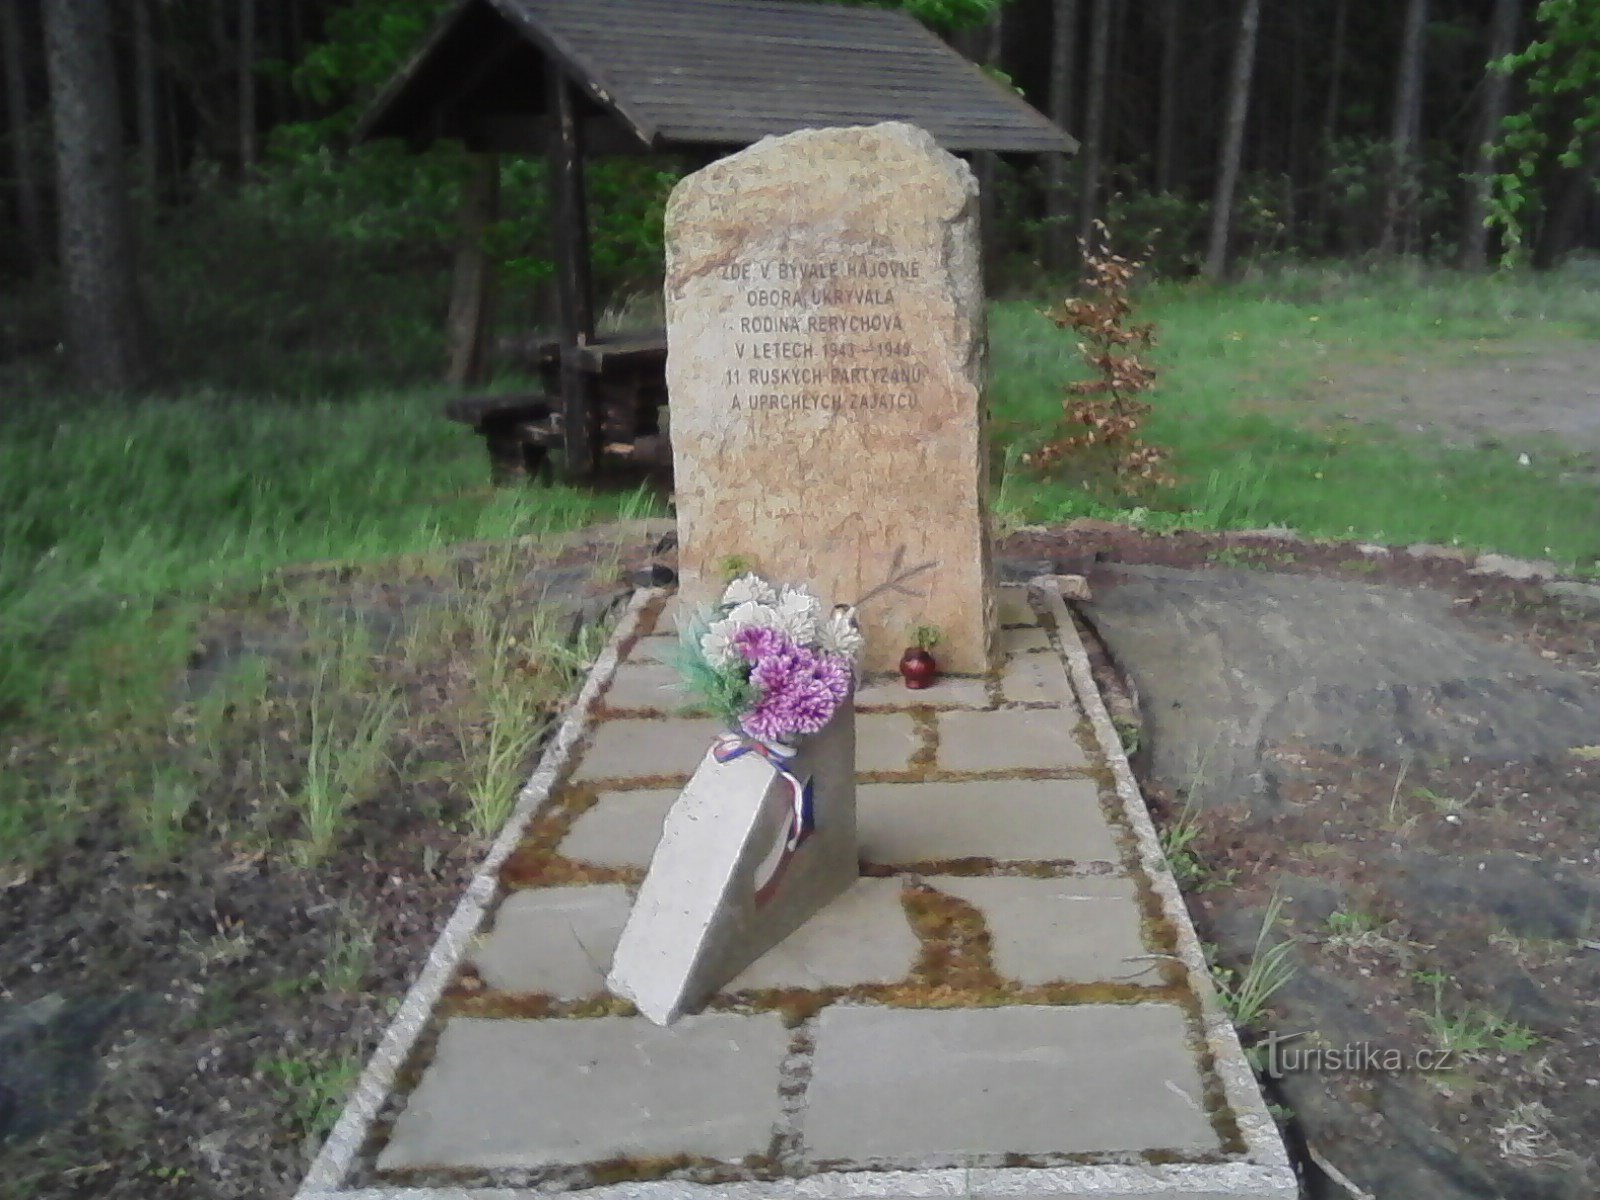 3. Denkmal für die Helden des Krieges auf dem Gelände des ehemaligen Rerych Game Reserve.